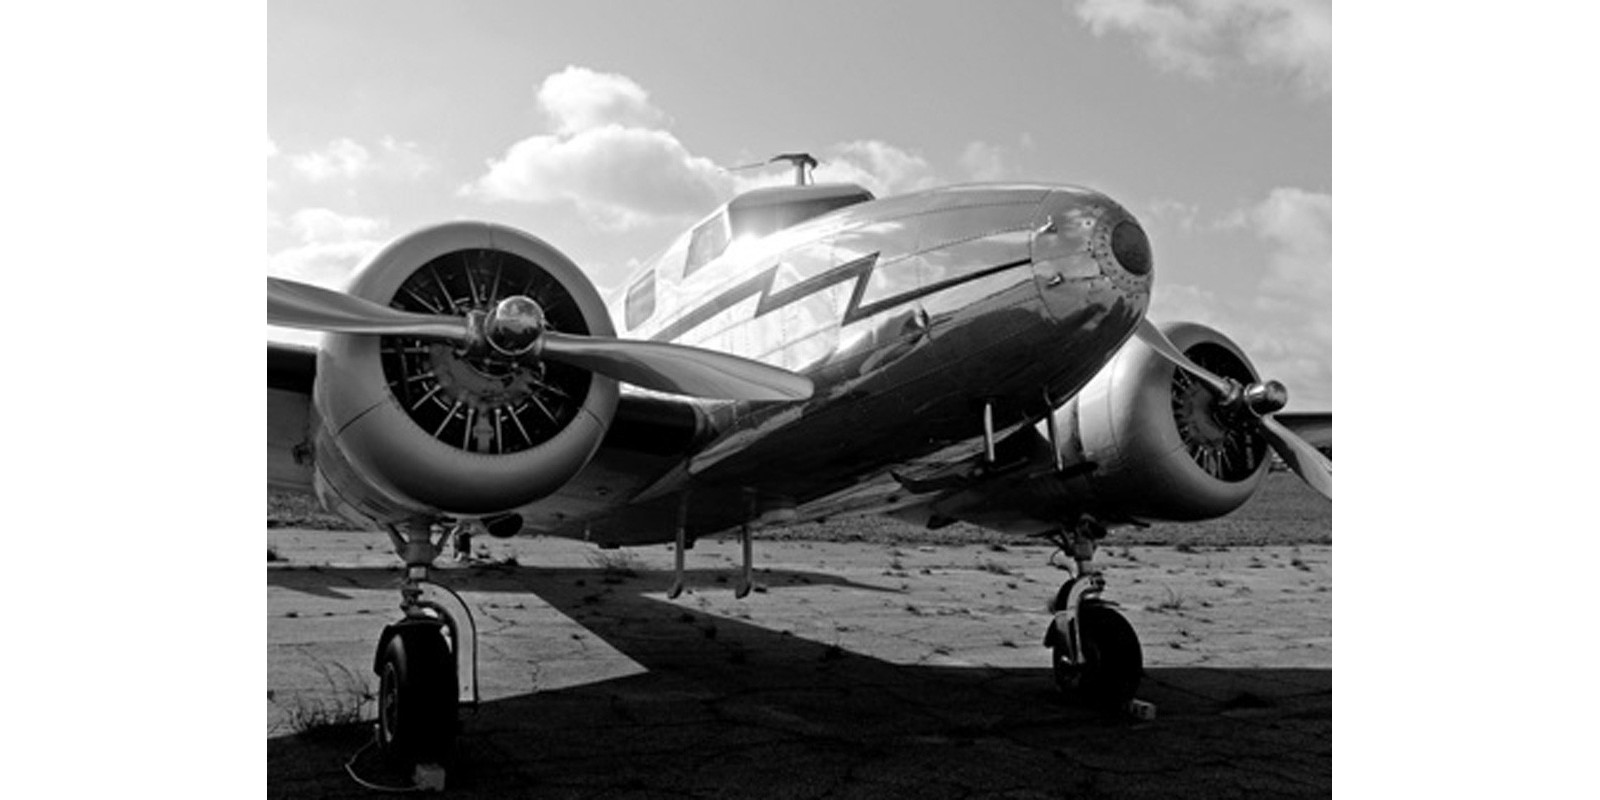 Ivan Cholakov - Vintage Airplane (detail)